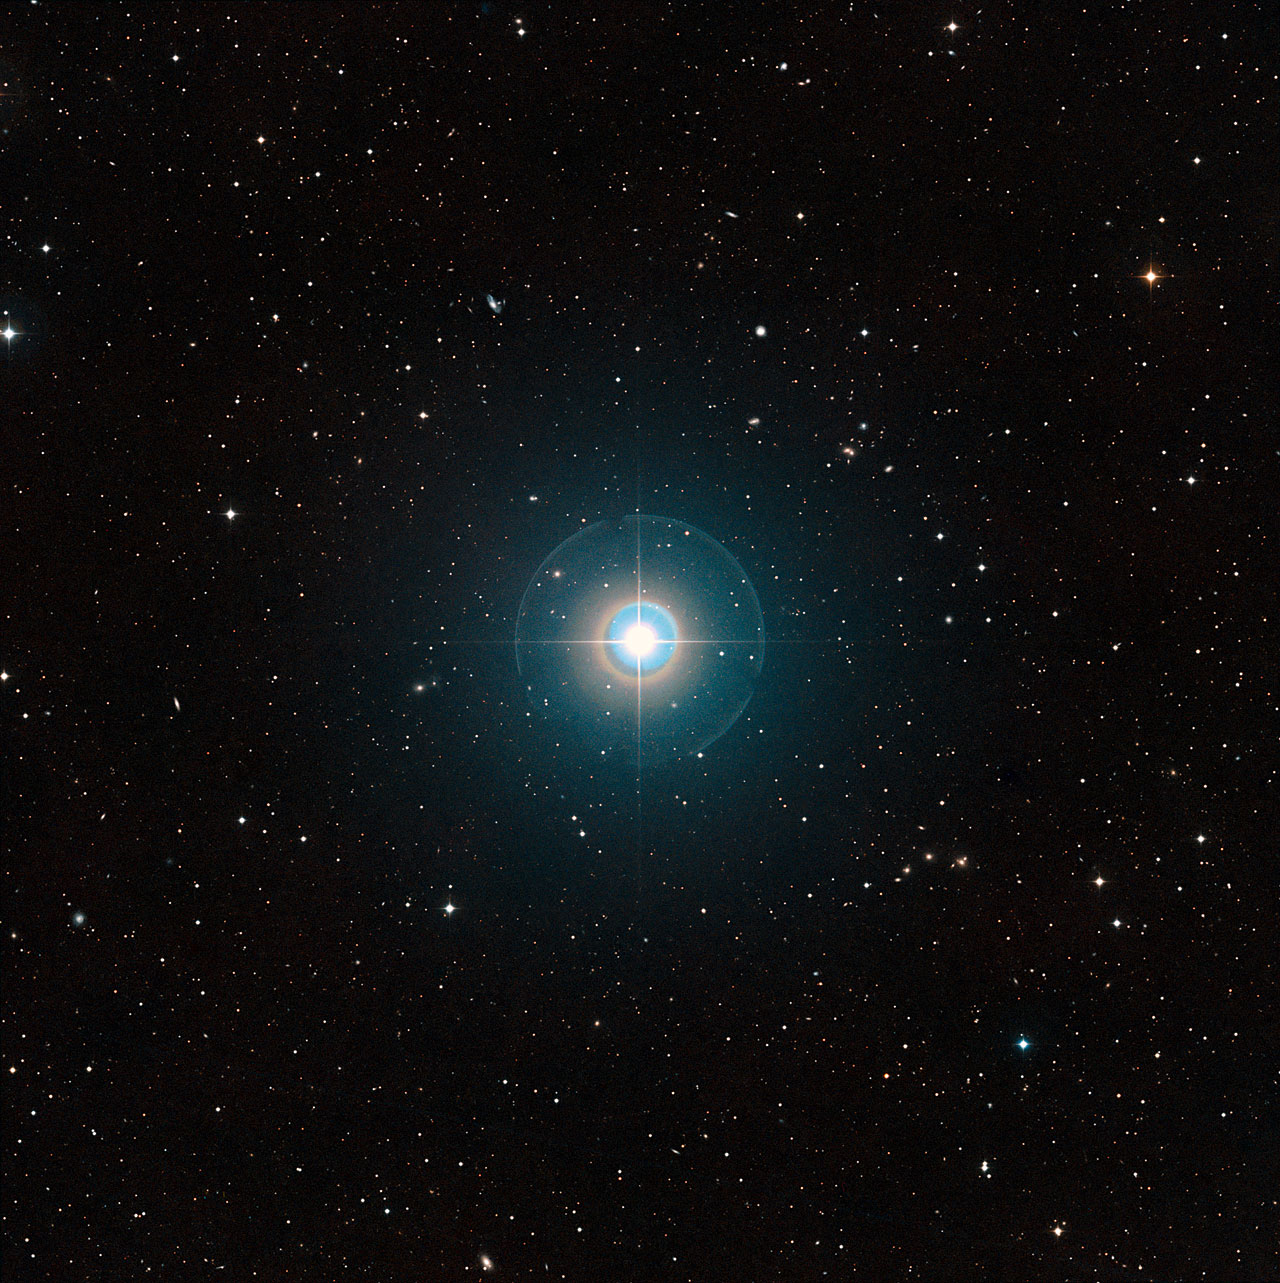 Cette image à grand champ du ciel autour de Tau Bootis a été créée à partir de clichés du Digitized Sky Survey 2. L'étoile elle-même, suffisamment brillante pour être vue à l'œil nu, se trouve au centre. Les traits fins et les cercles colorés autour d'elle sont des artefacts provoqués par le télescope et la plaque photographique utilisée et ne sont pas réels. L'exoplanète Tau Bootis b est en orbite à faible distance de l'étoile et est totalement invisible sur cette image. La planète vient juste d'être détectée de manière directe grâce à sa propre lumière en utilisant le VLT de l'ESO. ©&nbsp;ESO/Digitized Sky Survey 2